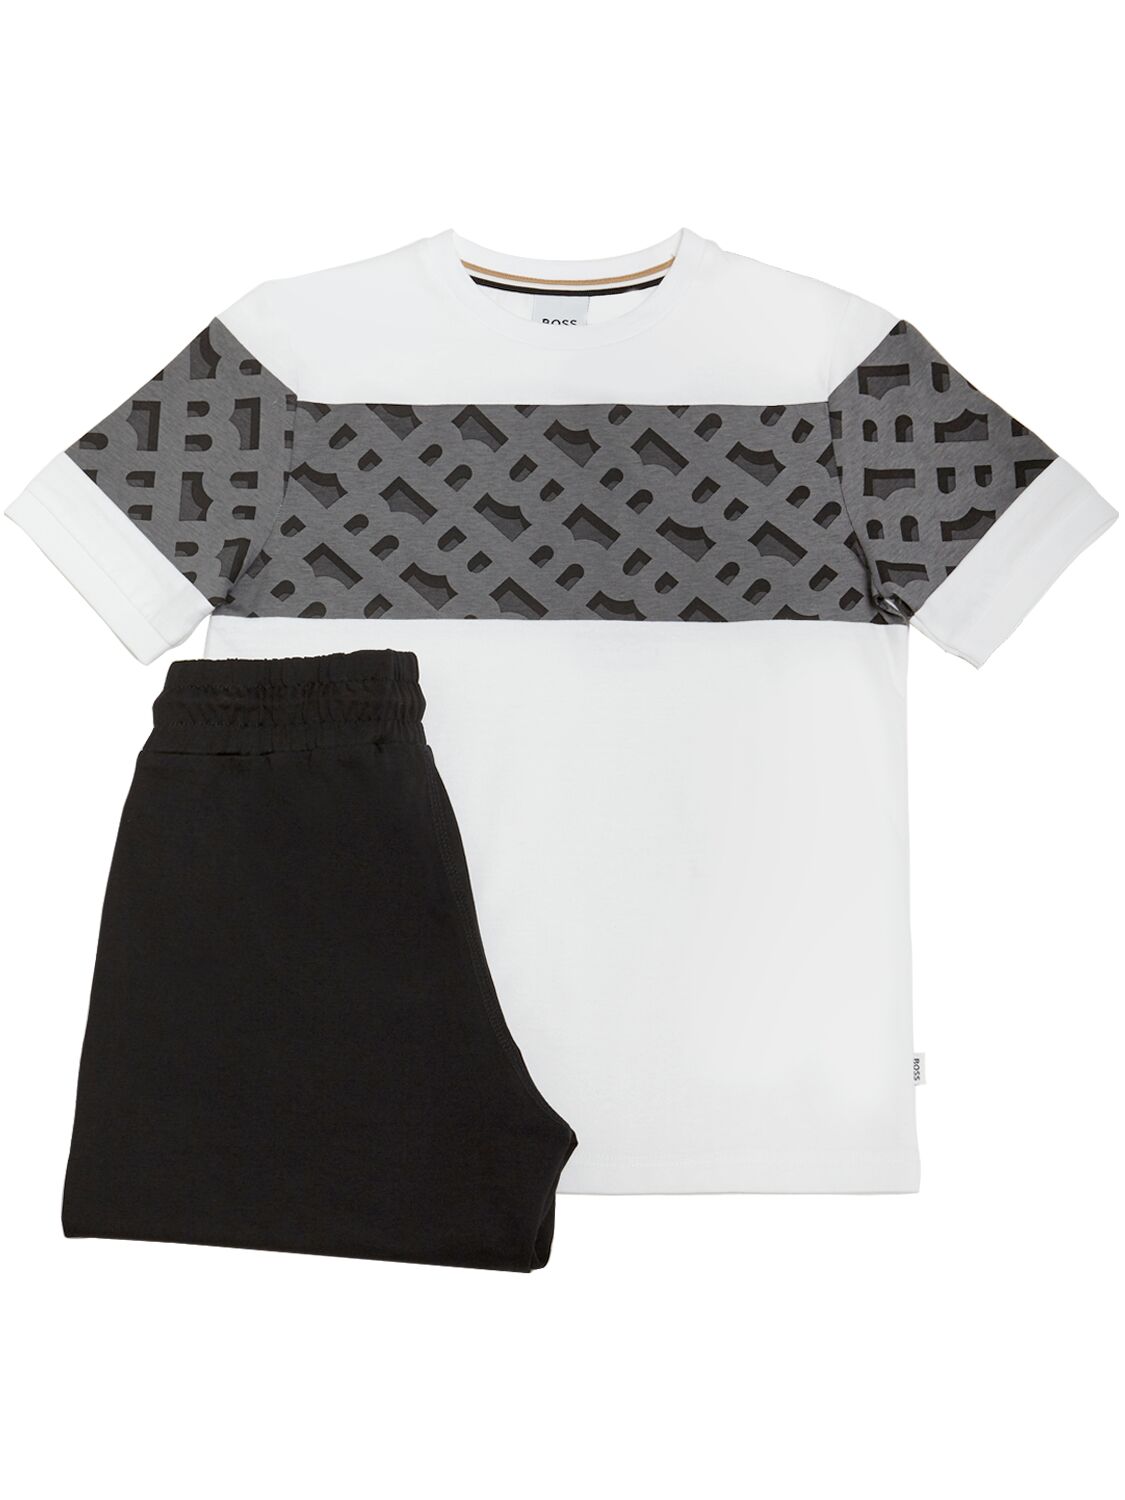 Hugo Boss Kids' 棉质平纹针织t恤&短裤 In White,black